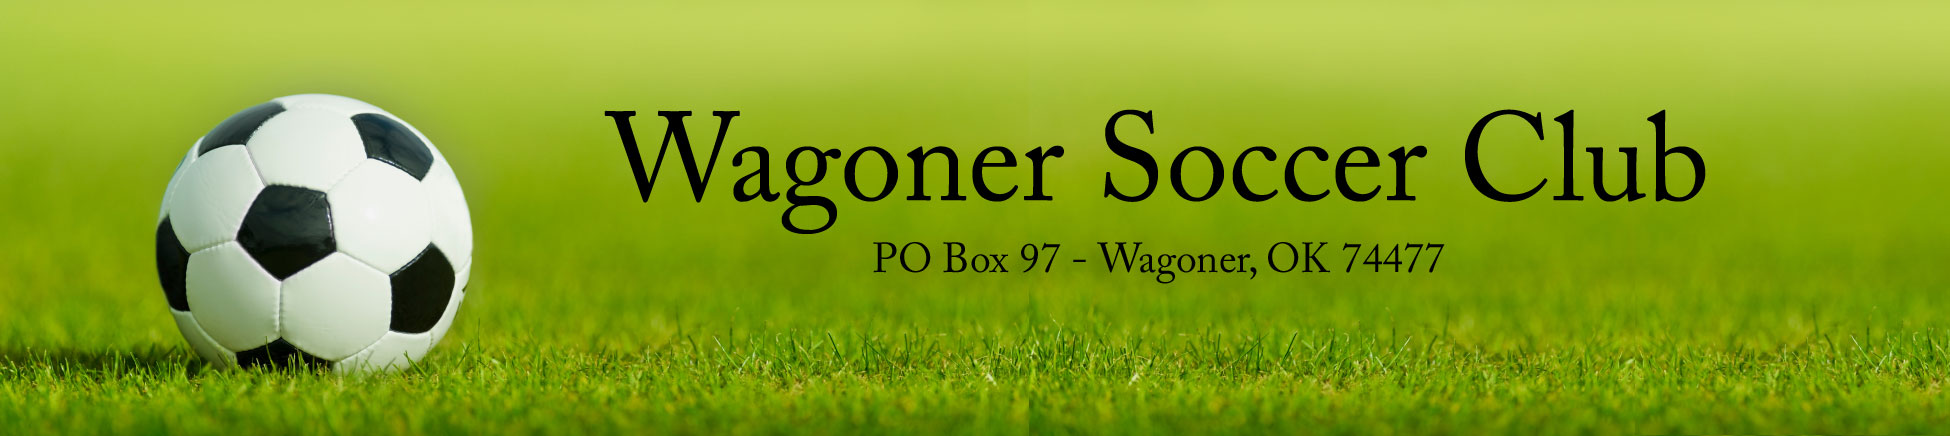 Wagoner Soccer